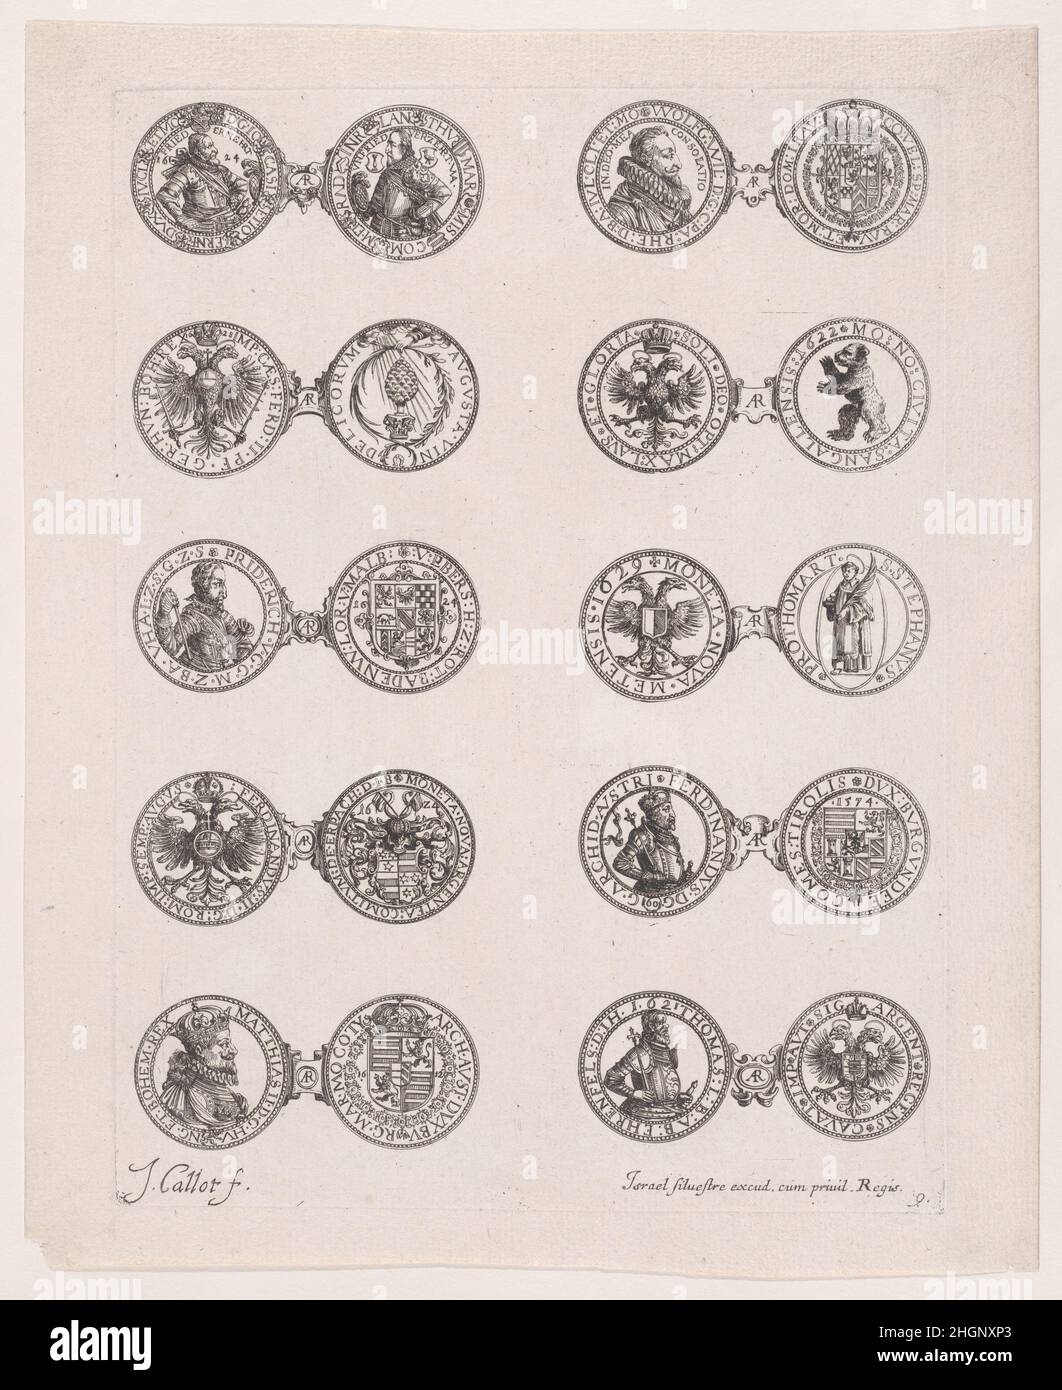 9th plaque, avec 10 pièces émises par les Princes européens aux siècles 16th et 17th, des Monnaies (les monnaies) ca.1630 Jacques Callot Français la série représente les pièces émises par les Princes européens, principalement d'Allemagne et d'Italie, aux siècles 16th et 17th.Cette plaque montre l'avant et l'arrière de 10 pièces.Ces pièces sont des portraits de princes ou d'emblèmes européens et sont reliées par une cartouche avec l'inscription 'AR' (argentum).9th plaque, avec 10 pièces émises par les Princes européens aux siècles 16th et 17th, des Monnaies (les monnaies).Les Monnaies.Jacques Cal Banque D'Images